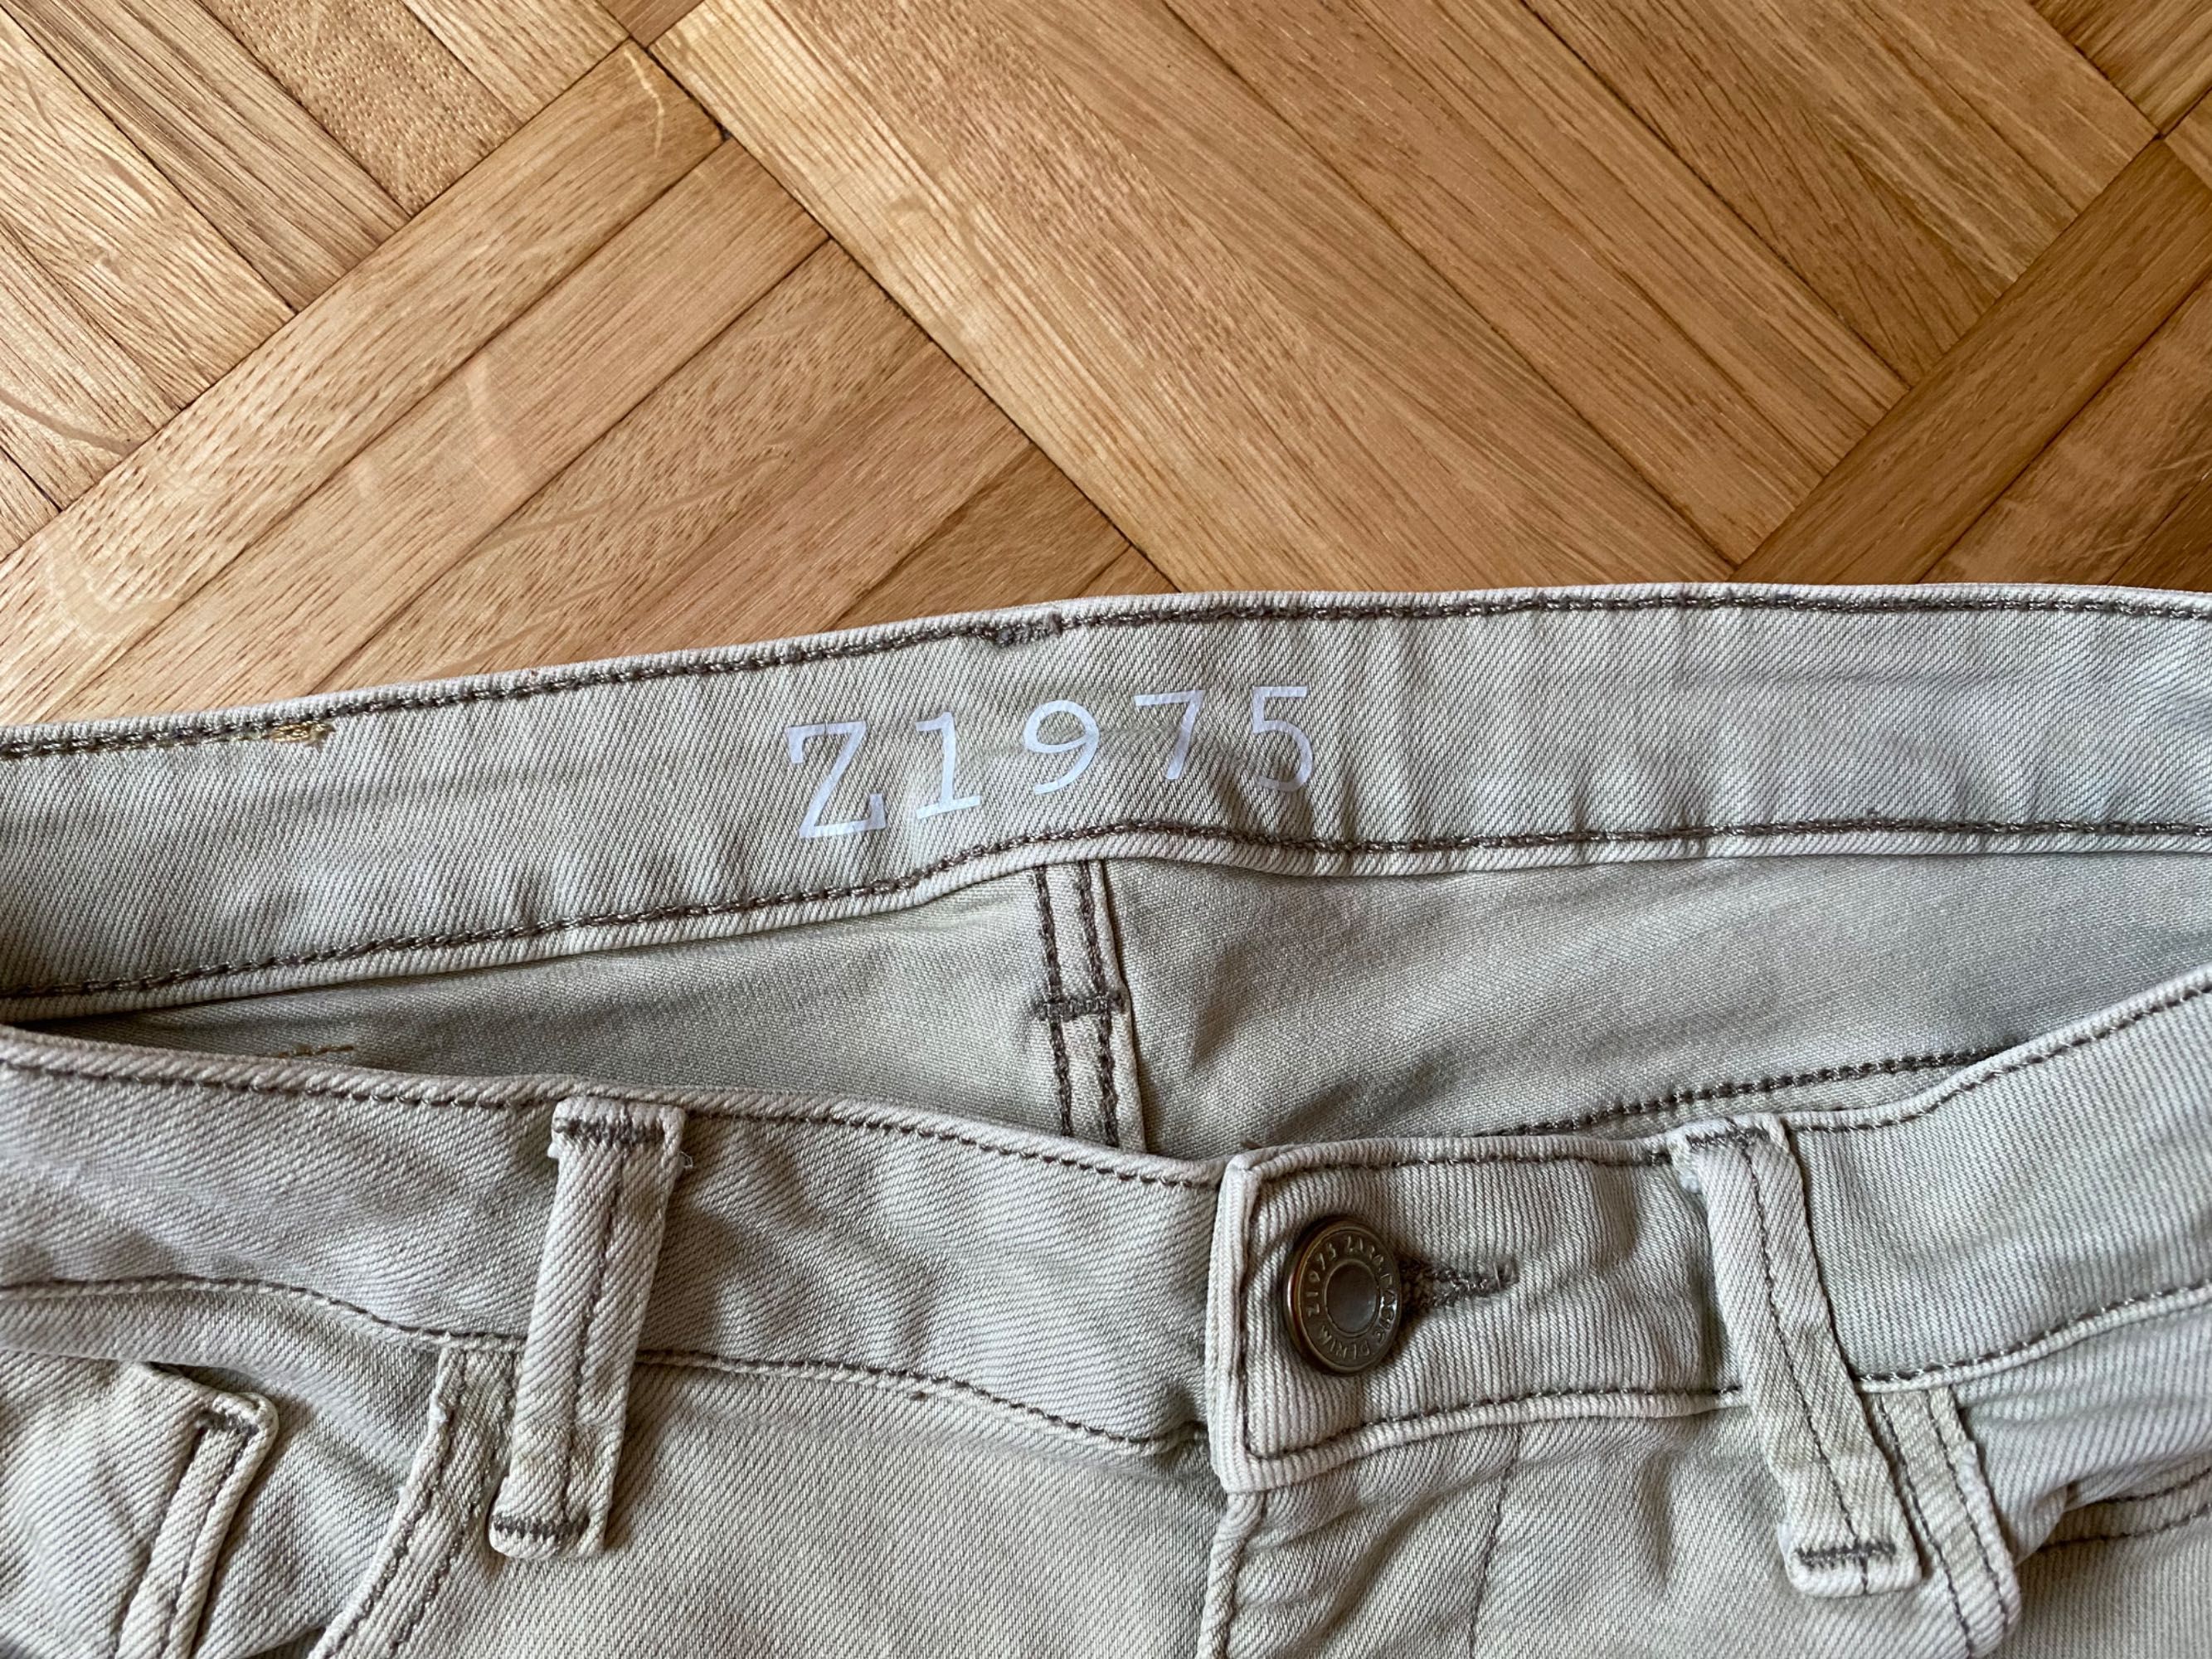 Spodnie jeansy skinny ZARA model Z1978, rozmiar 36